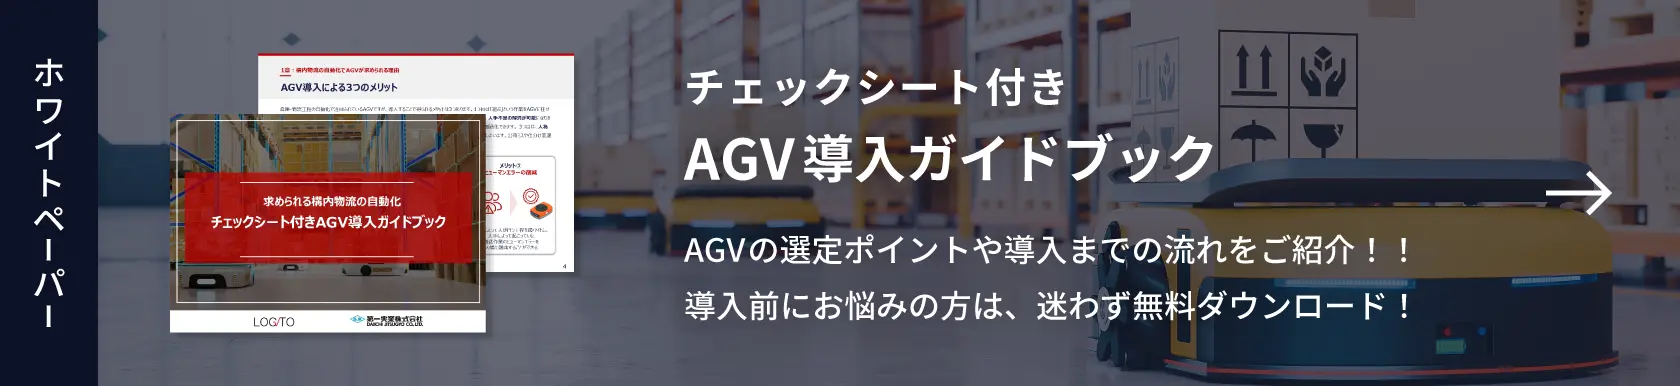 求められる構内物流の自動化 チェックシート付きAGV導入ガイドブック